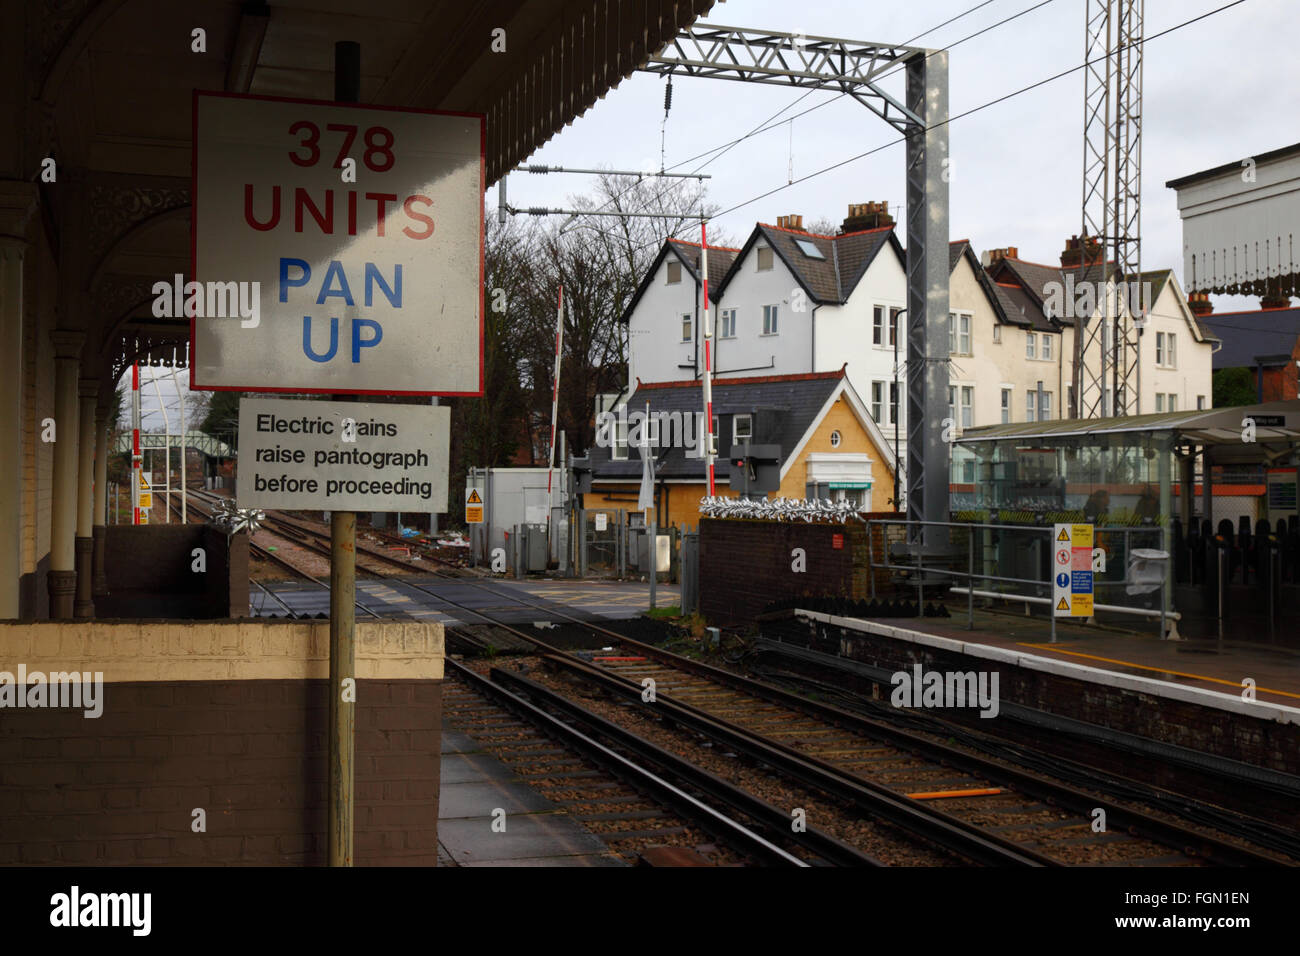 Segno raccontando i treni elettrici per sollevare il pantografo prima di procedere, Acton centrale stazione Overground, Acton, Londra, Inghilterra Foto Stock